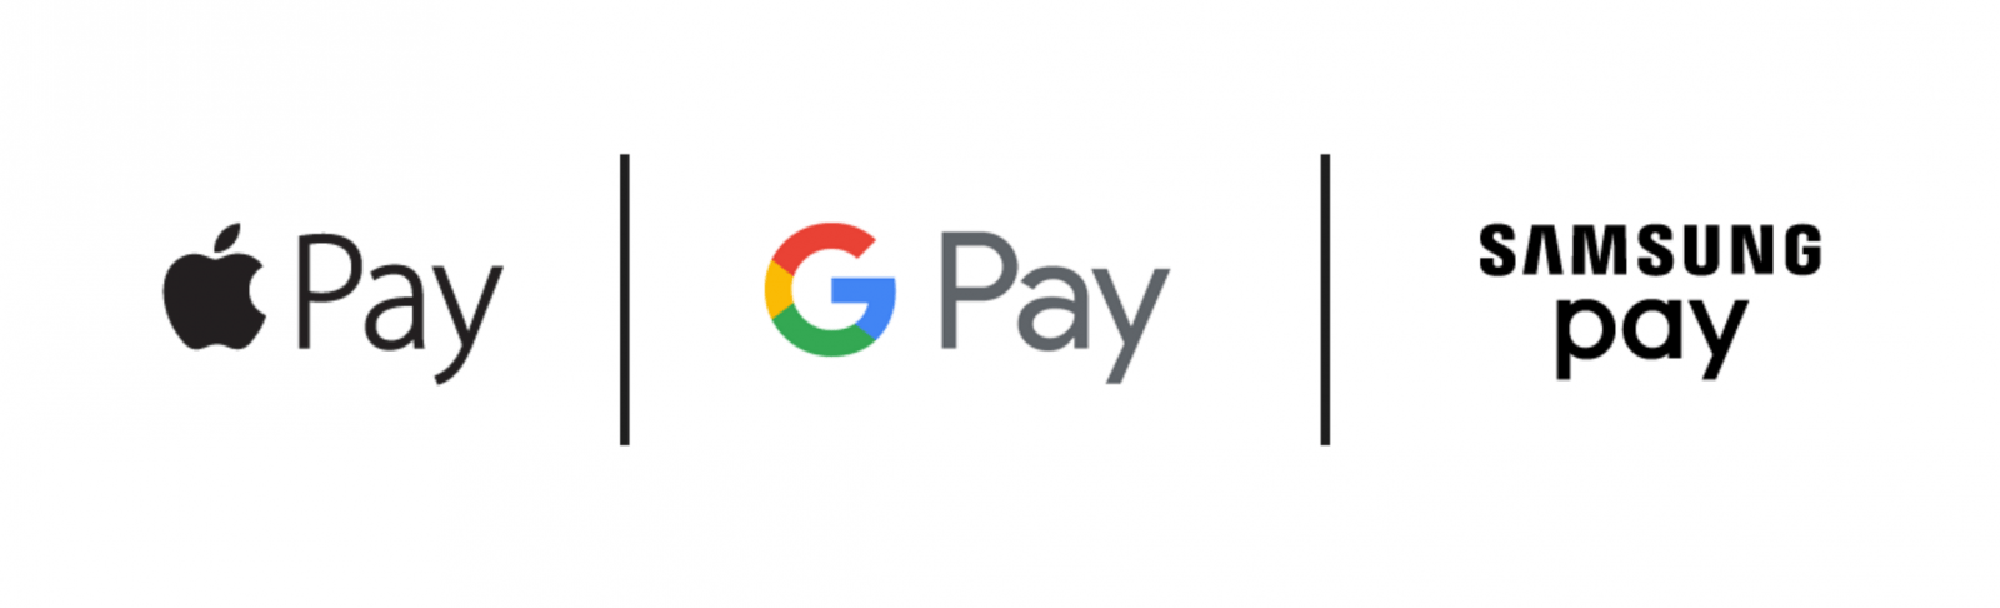 Google play платежи. Pay логотип. Samsung pay логотип. Apple pay значок. Apple pay Samsung pay.